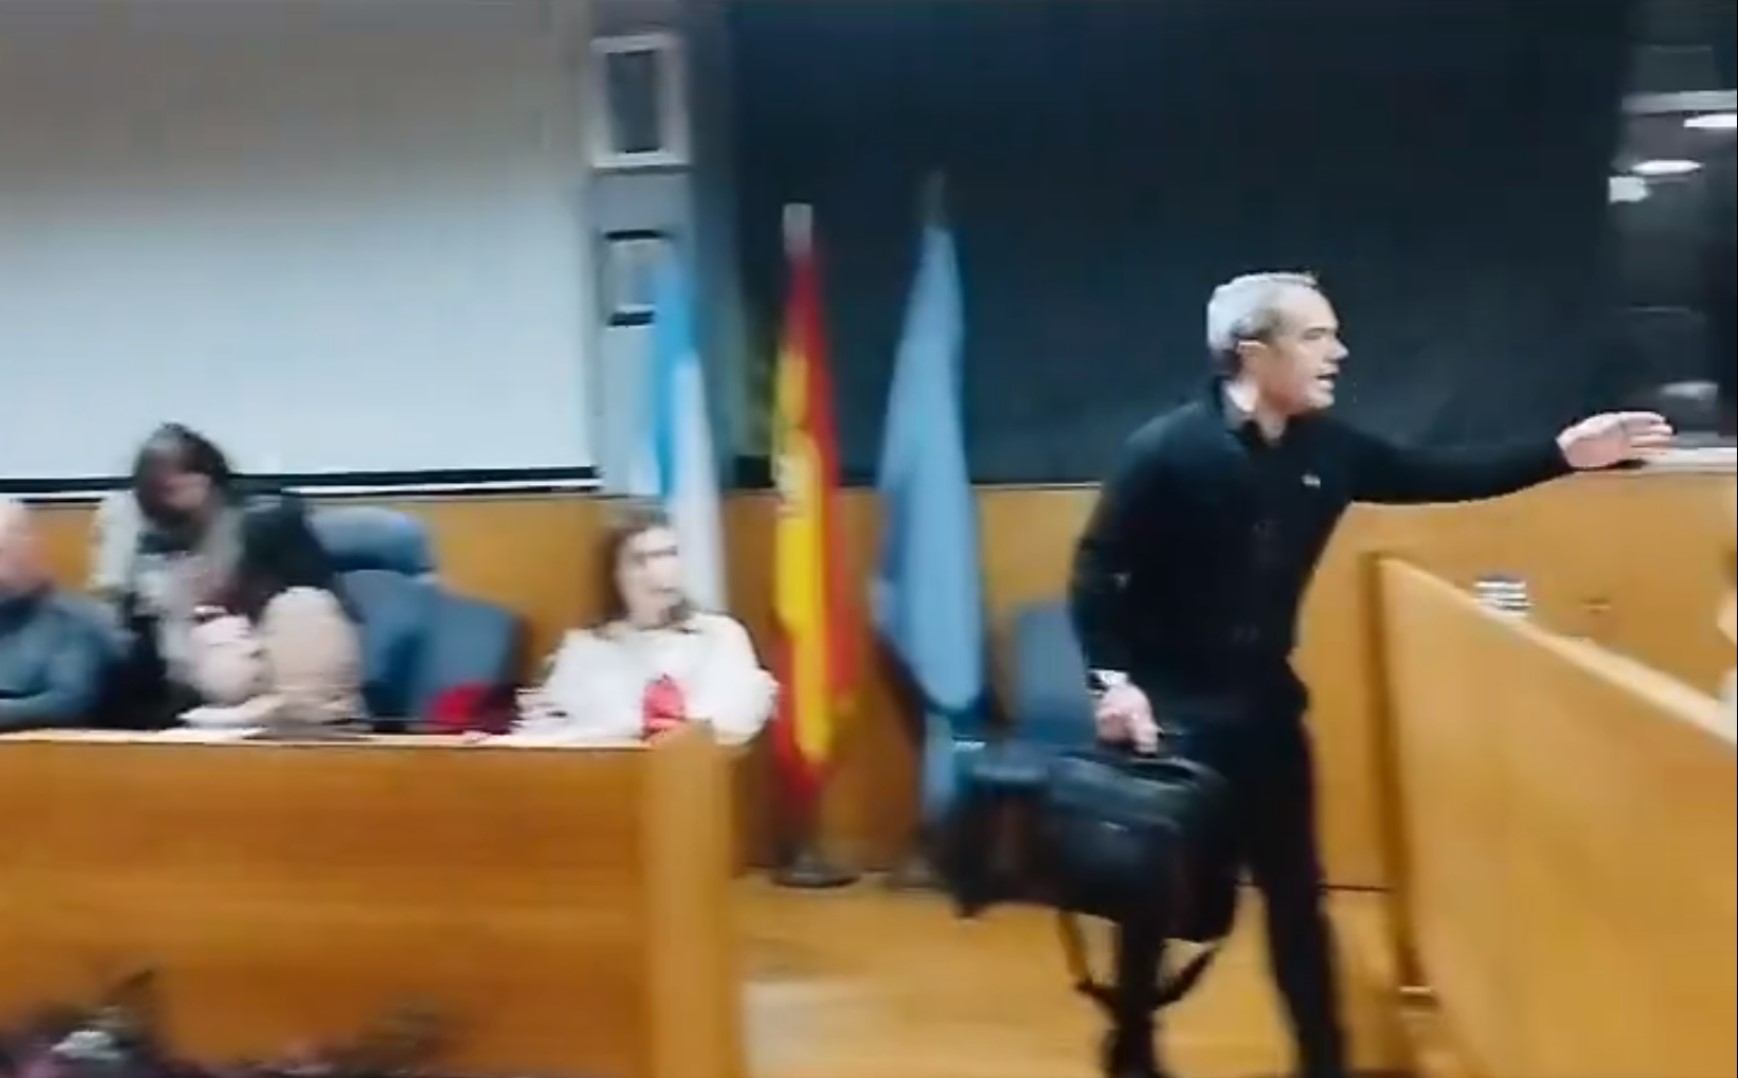 Alegría exige la dimisión de un concejal del PP en Cangas por levantar la mano a la portavoz socialista